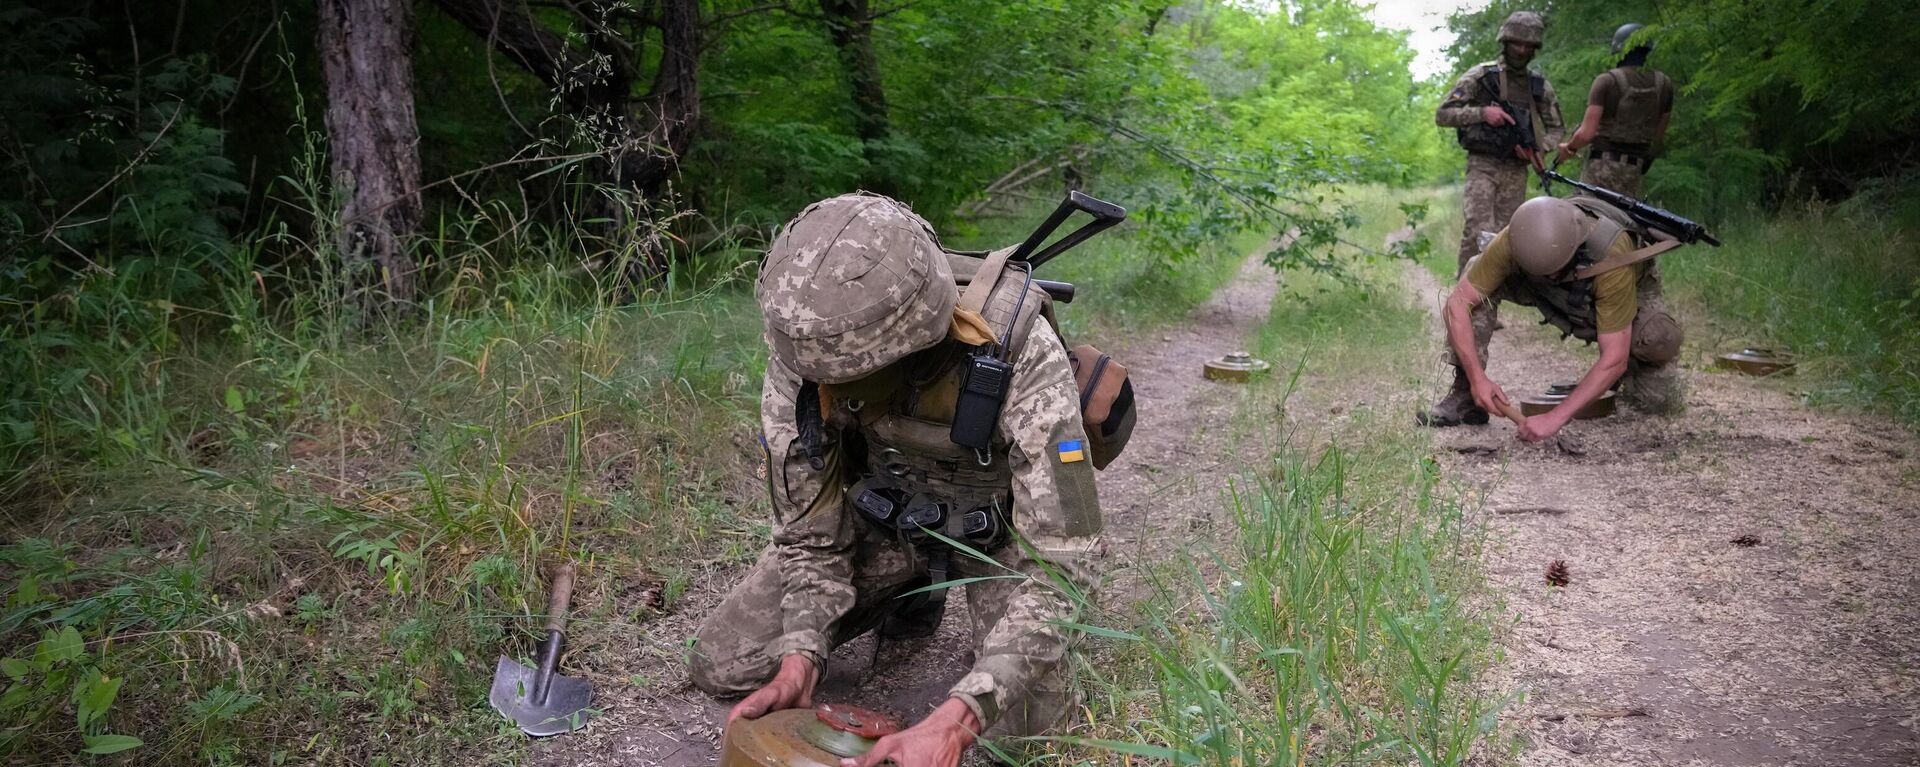 Soldados ucranianos instalam minas antitanque na floresta, Ucrânia, 14 de junho de 2022 - Sputnik Brasil, 1920, 10.07.2022